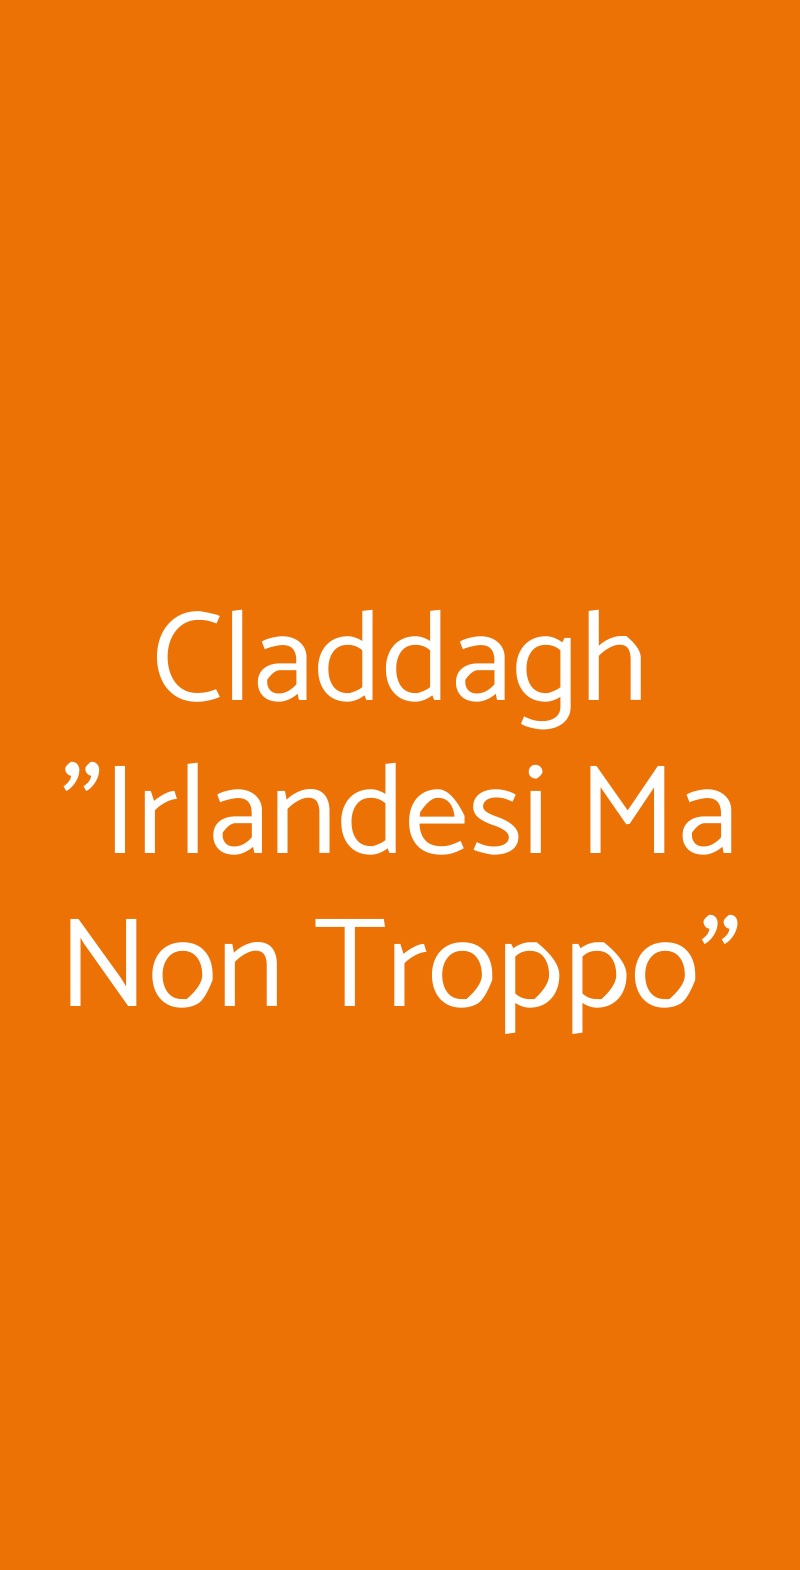 Claddagh "Irlandesi Ma Non Troppo" Napoli menù 1 pagina